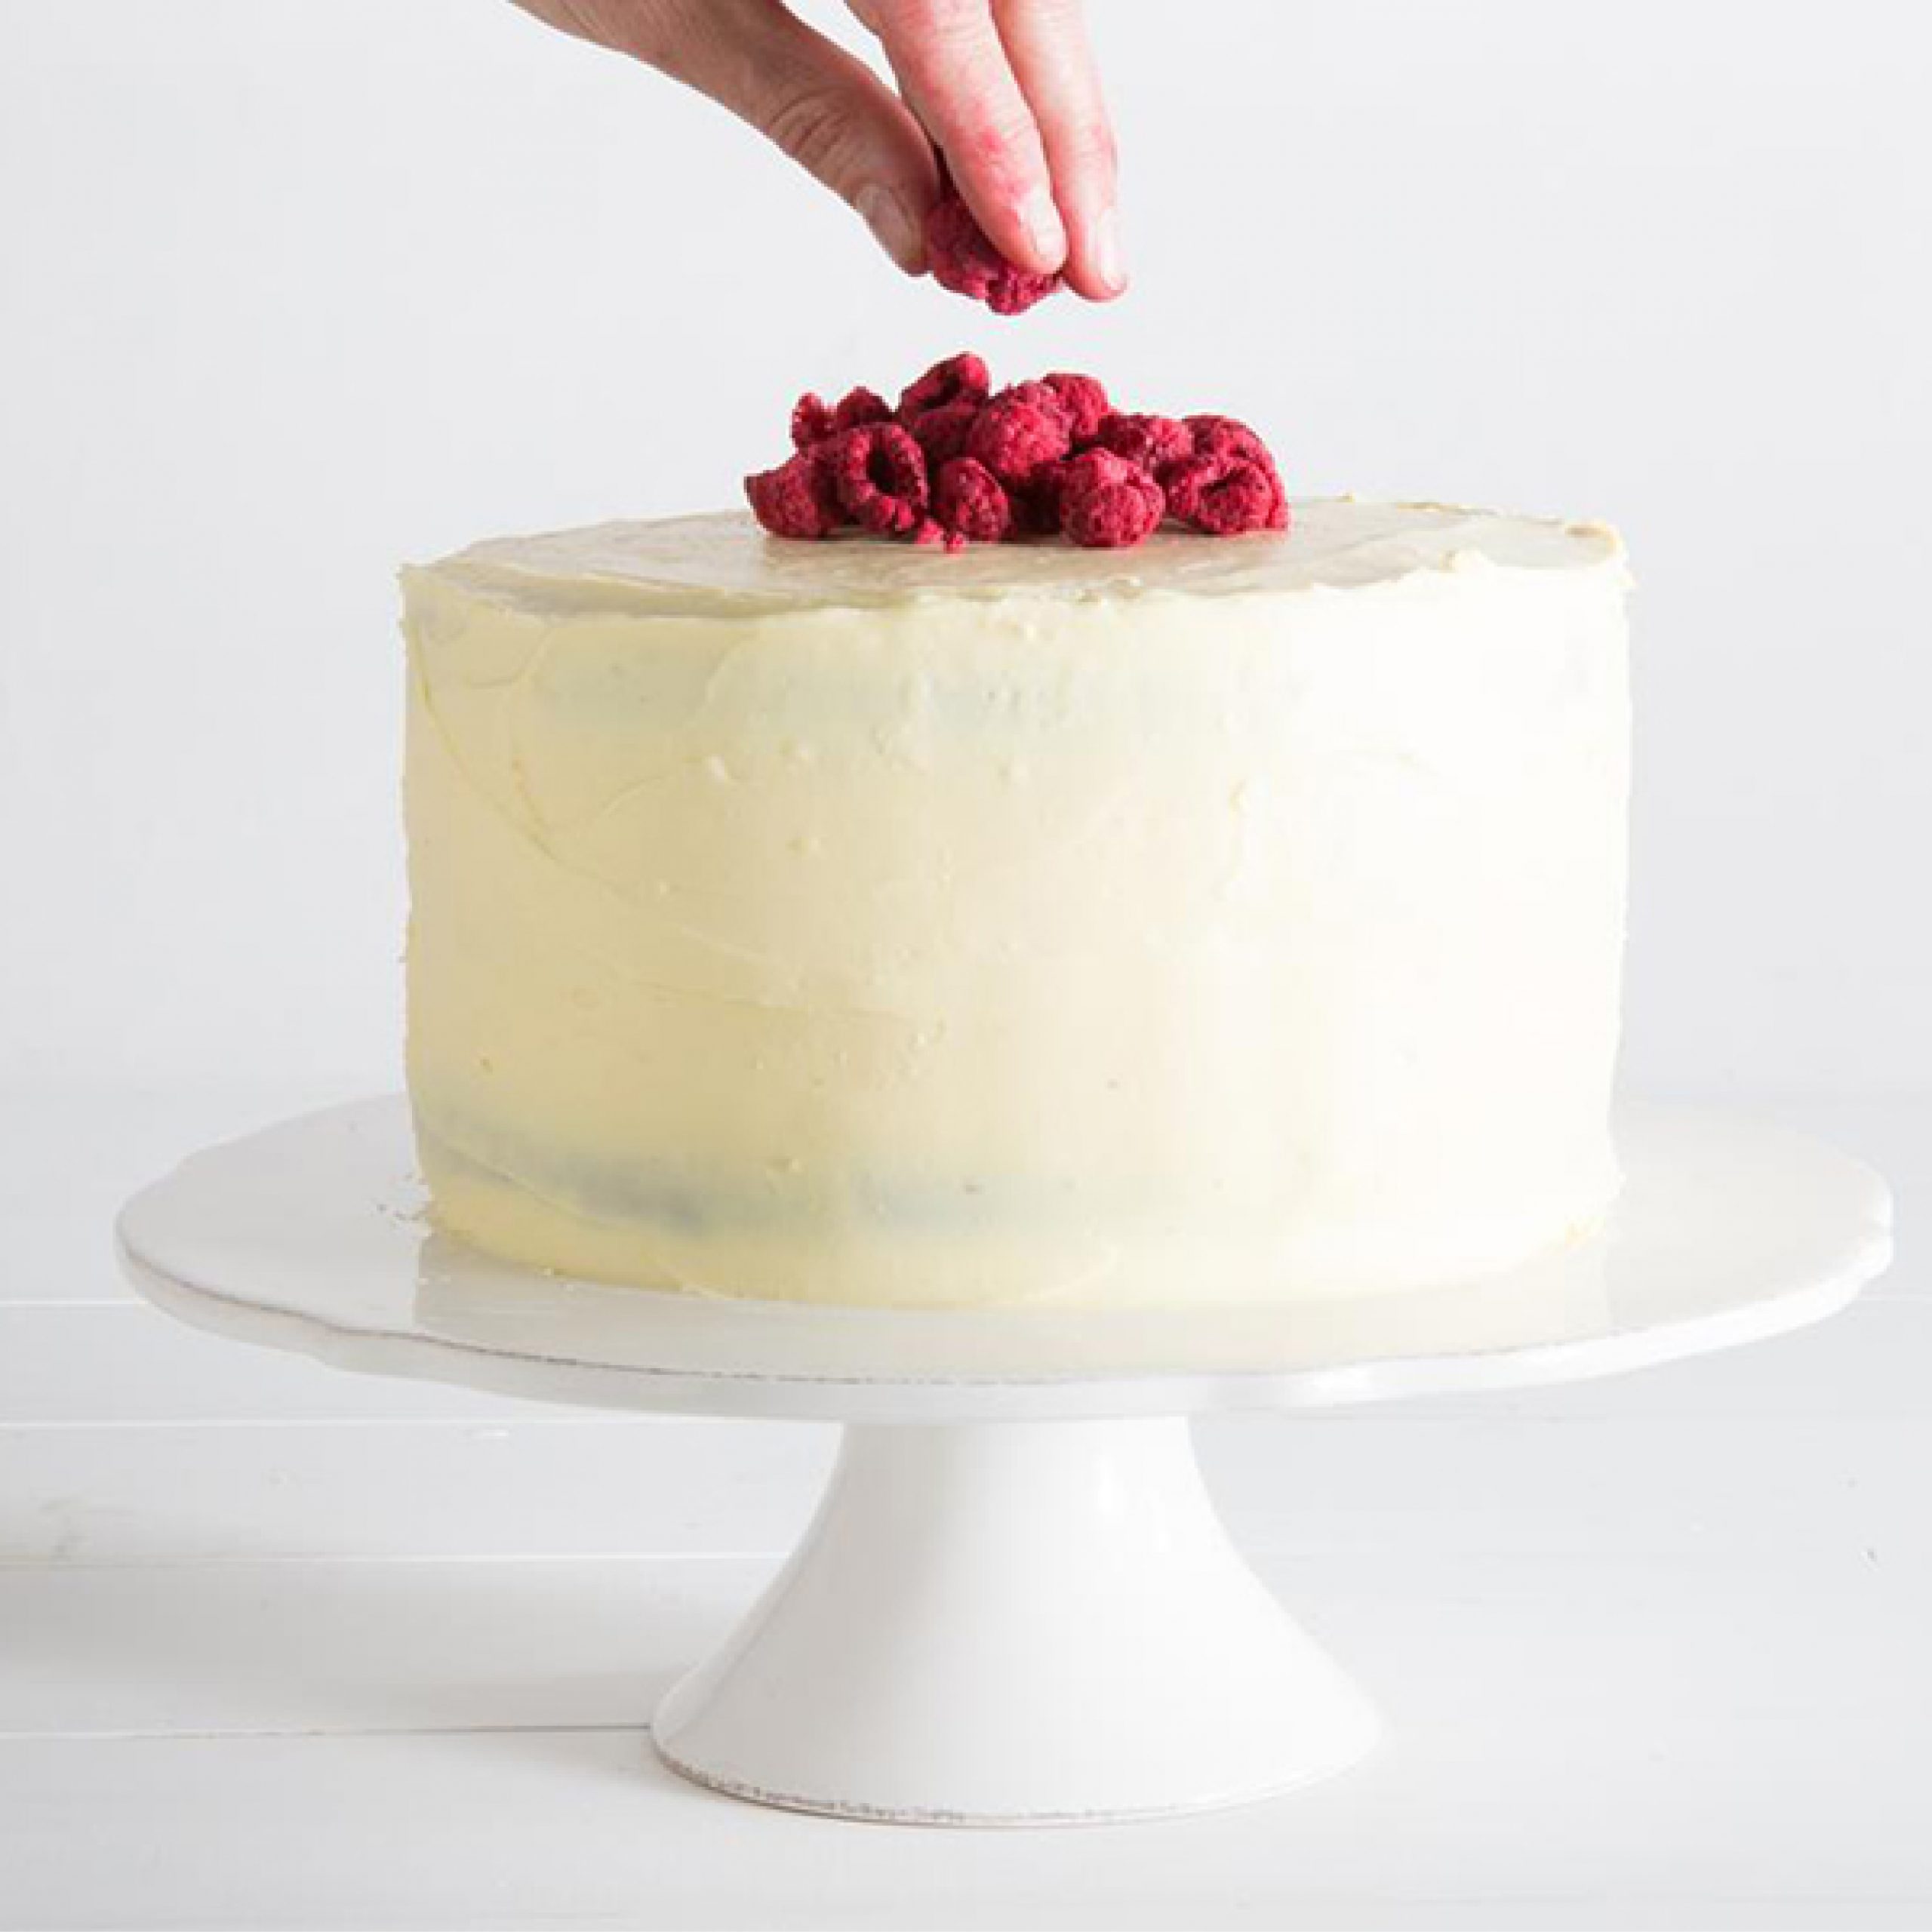 LeaderBrand Beetroot Red Velvet Cake Recipe